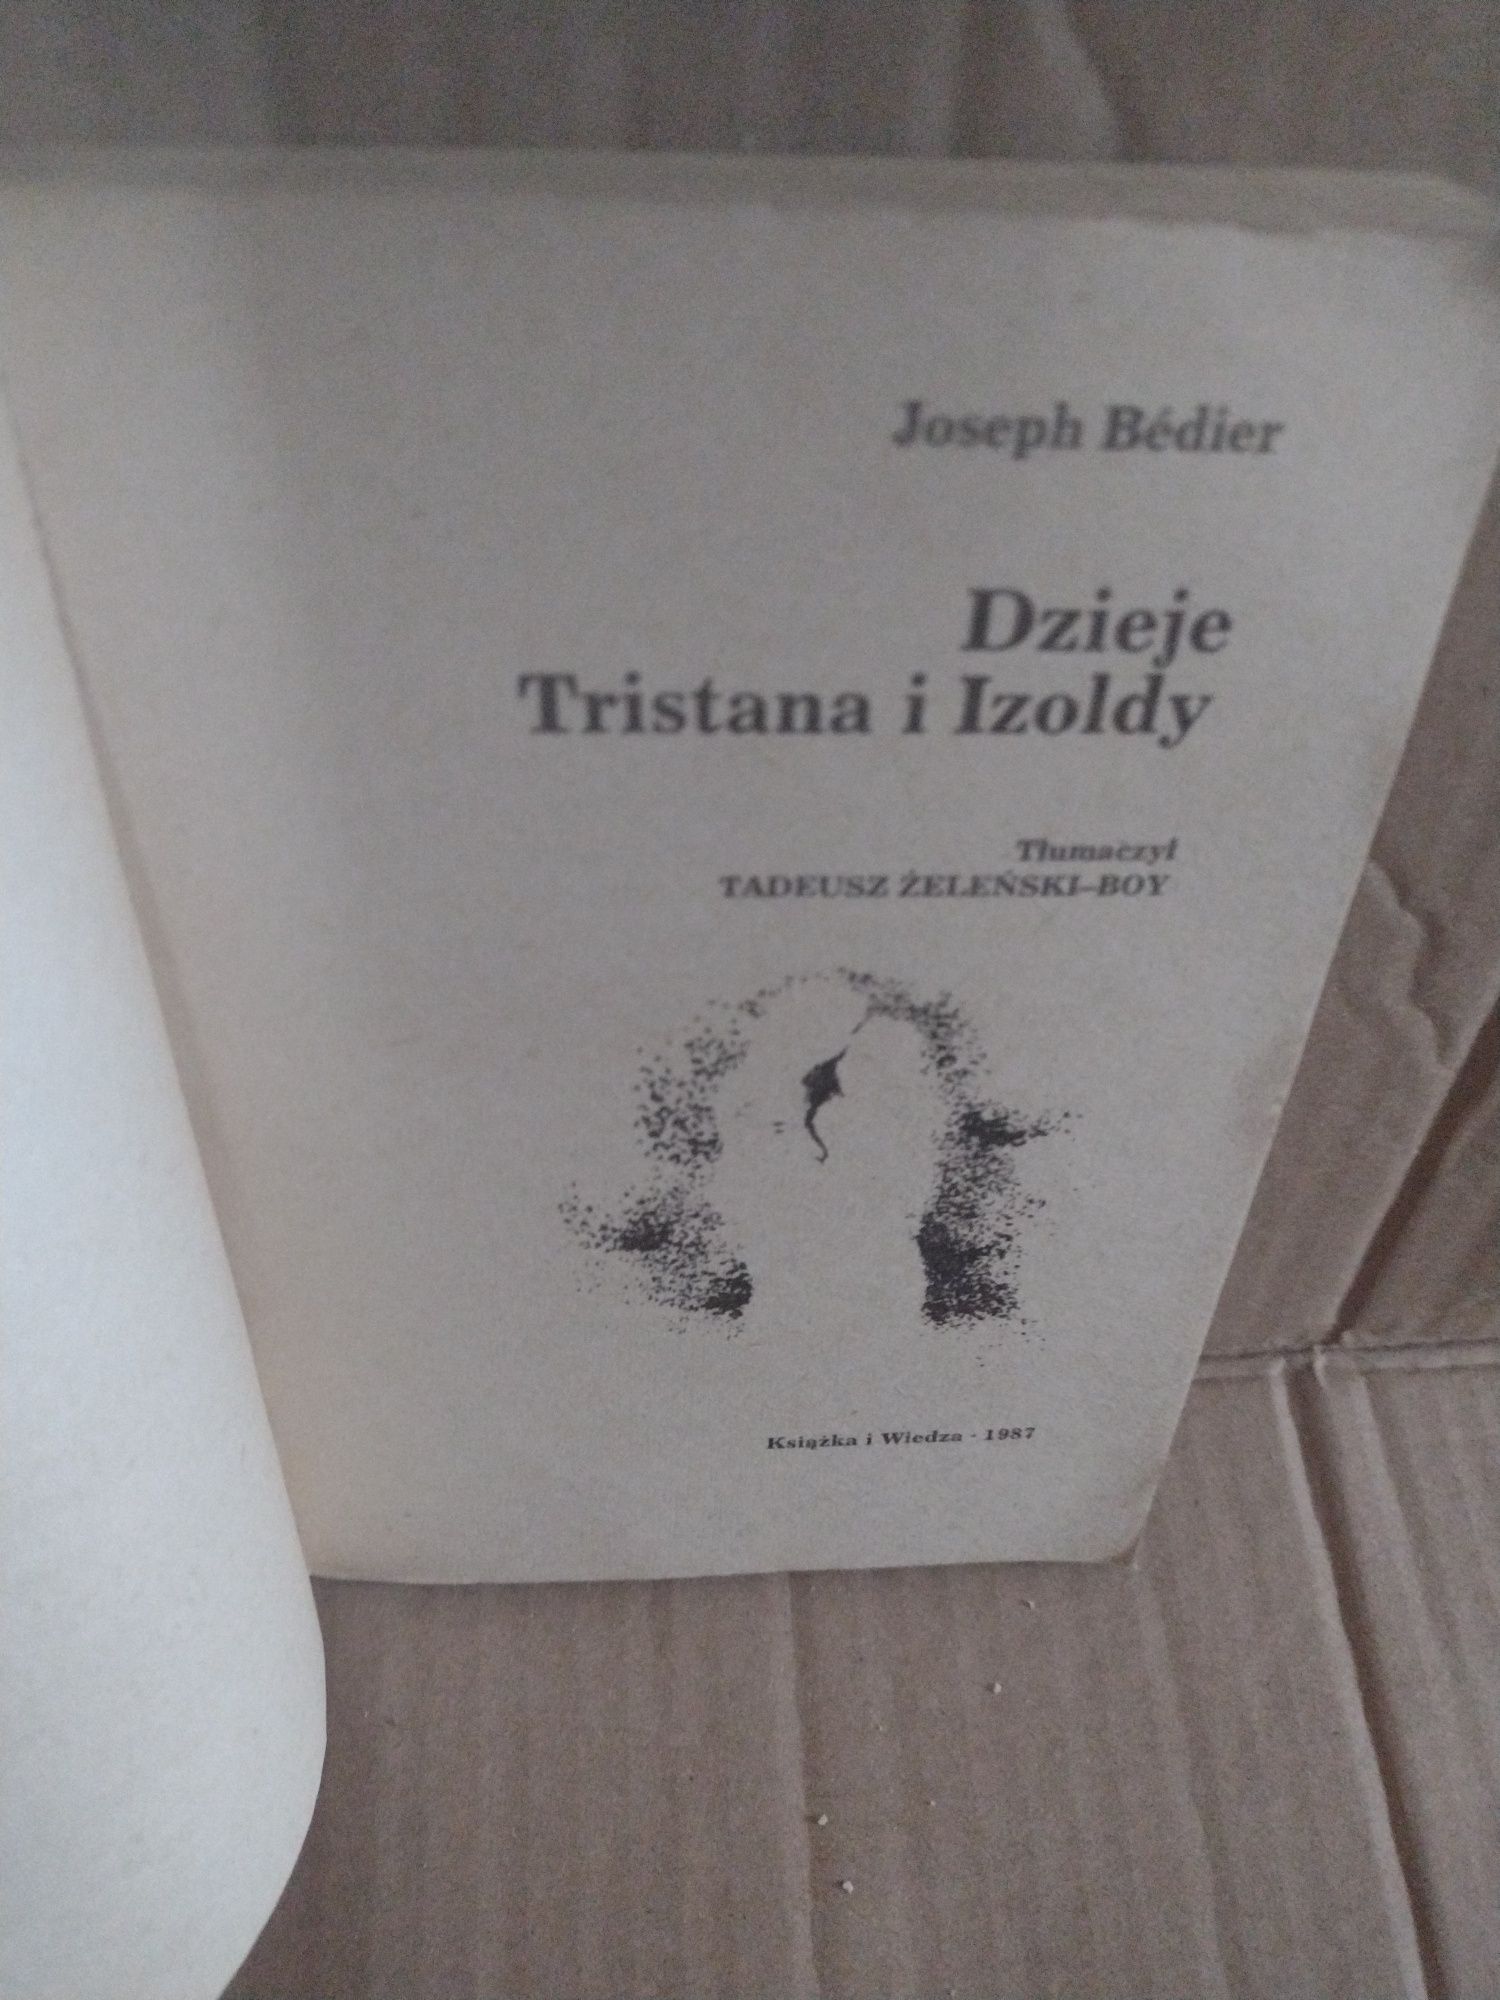 Dzieje Tristana i Izoldy Joseph Bédier seria koliber